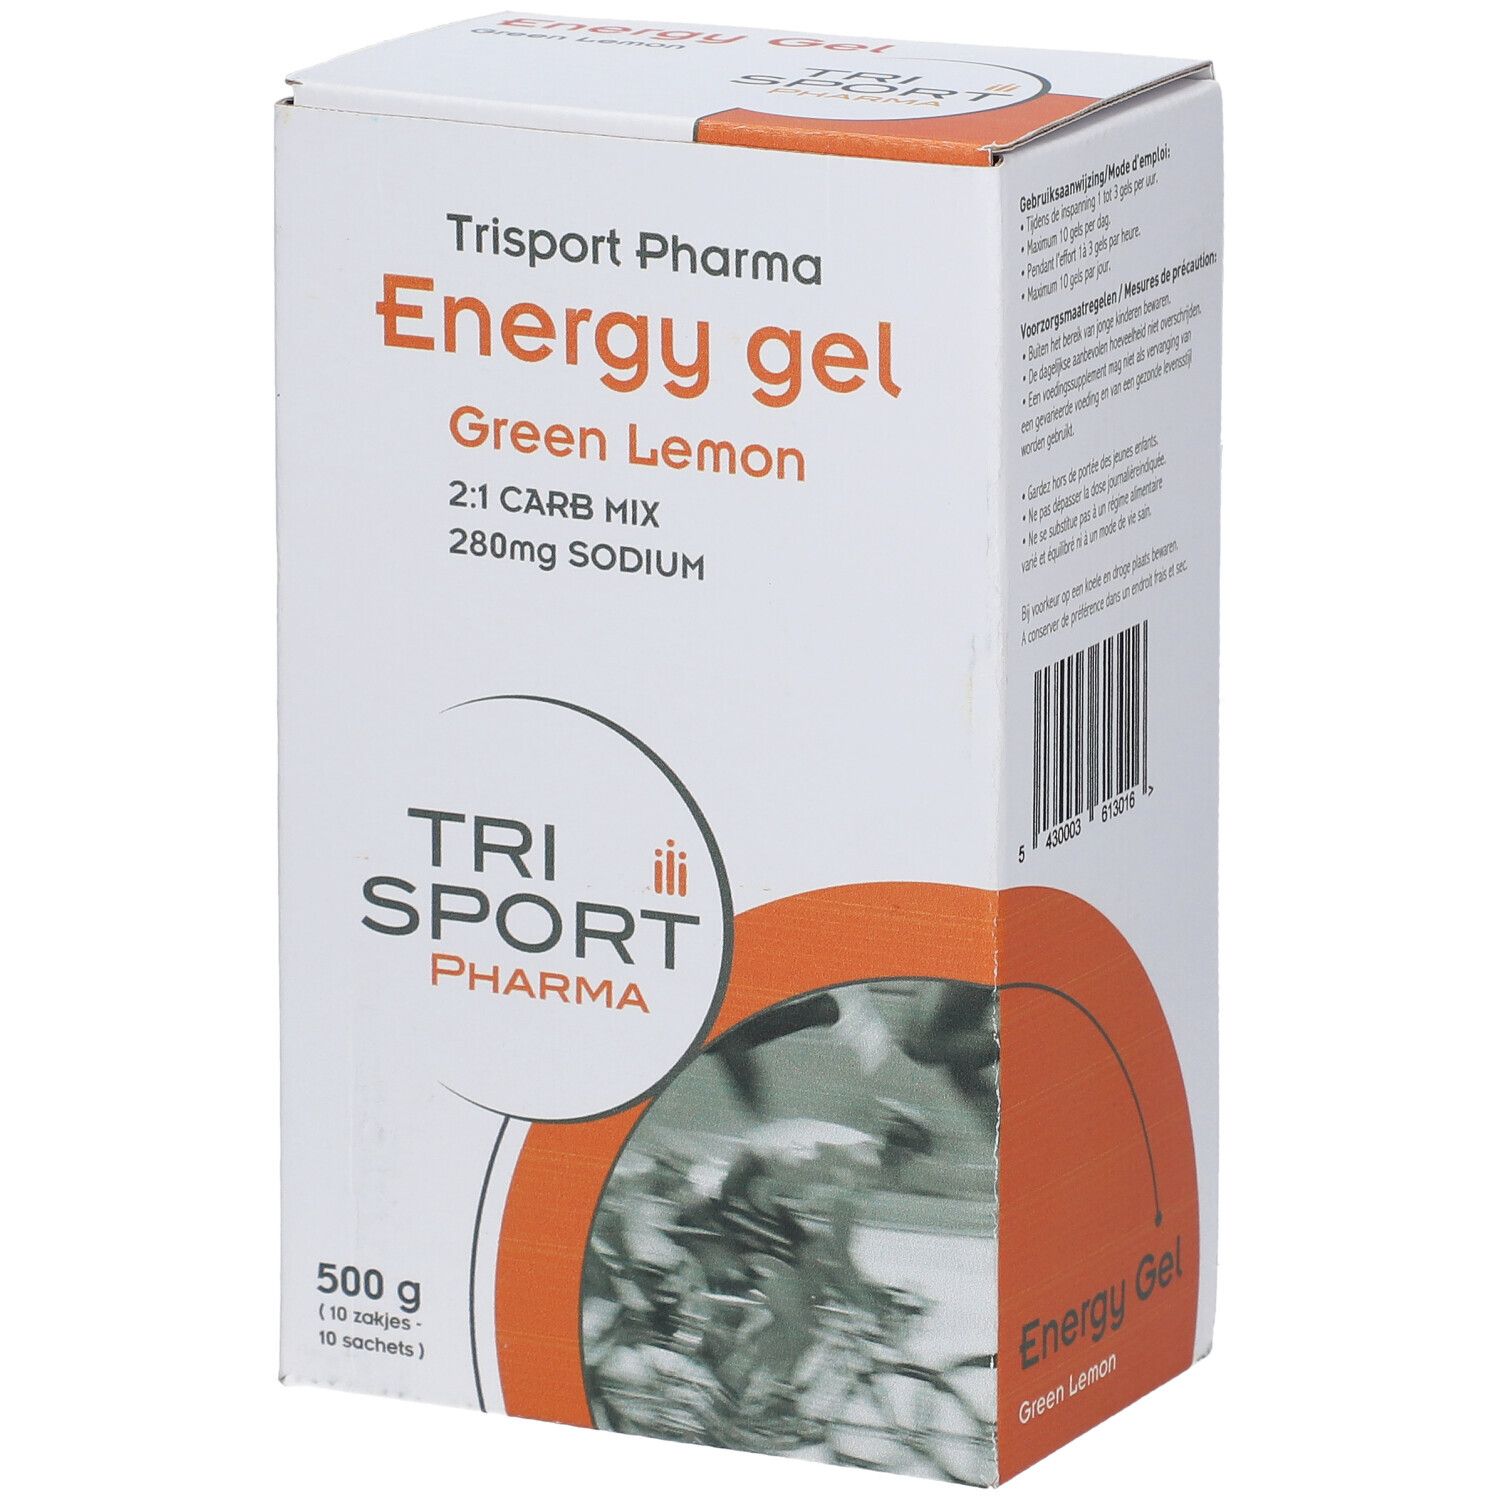 Trisport Pharma Energy Gel Ratio 2:1 Green Lemon